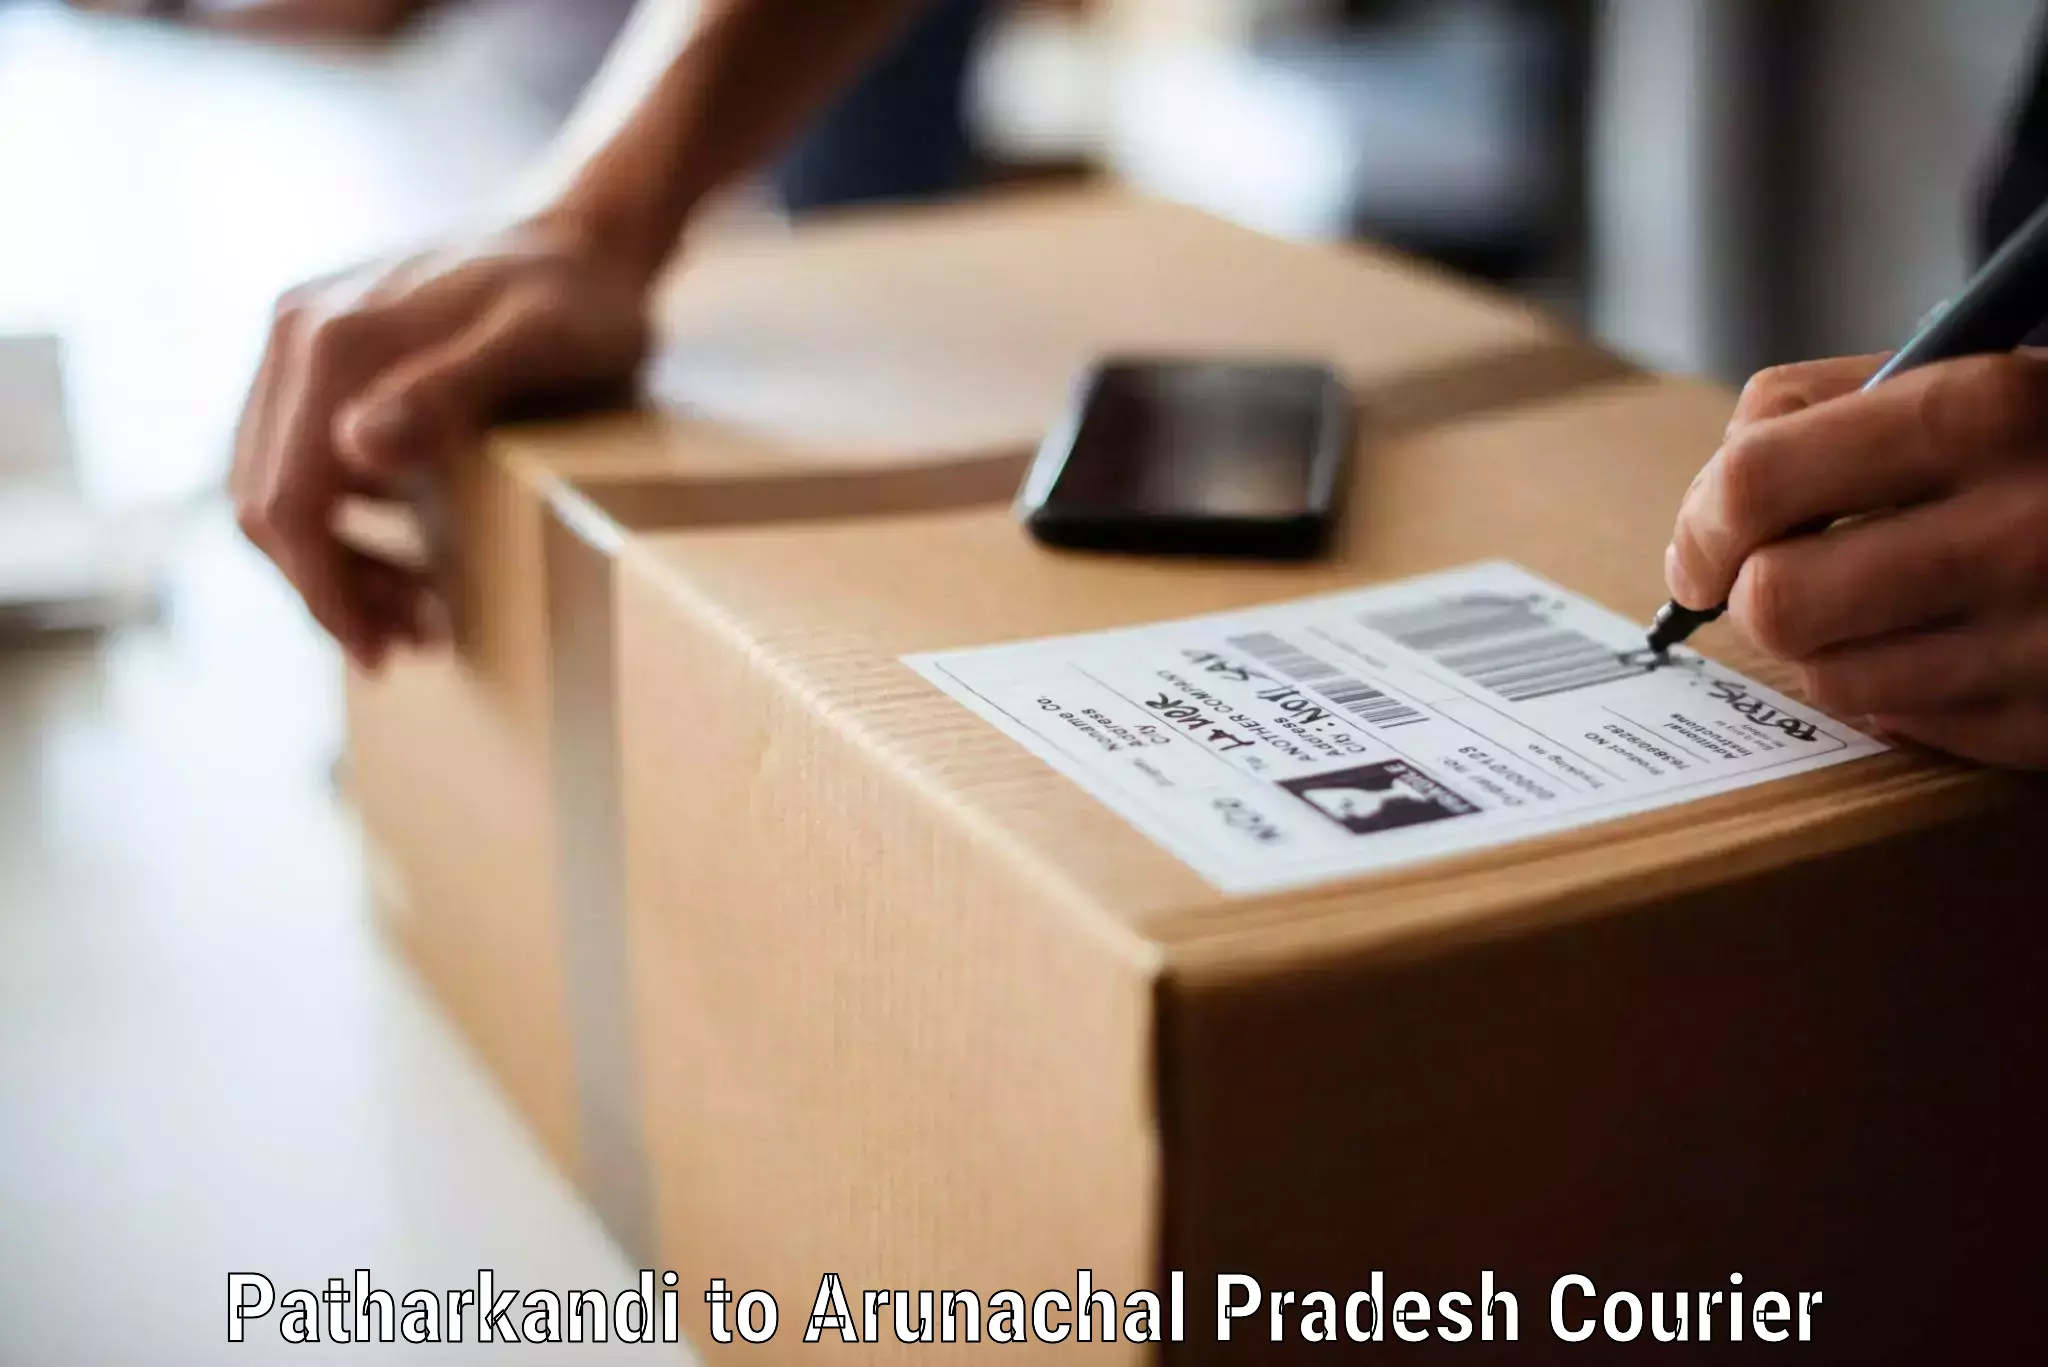 Hassle-free relocation in Patharkandi to Arunachal Pradesh